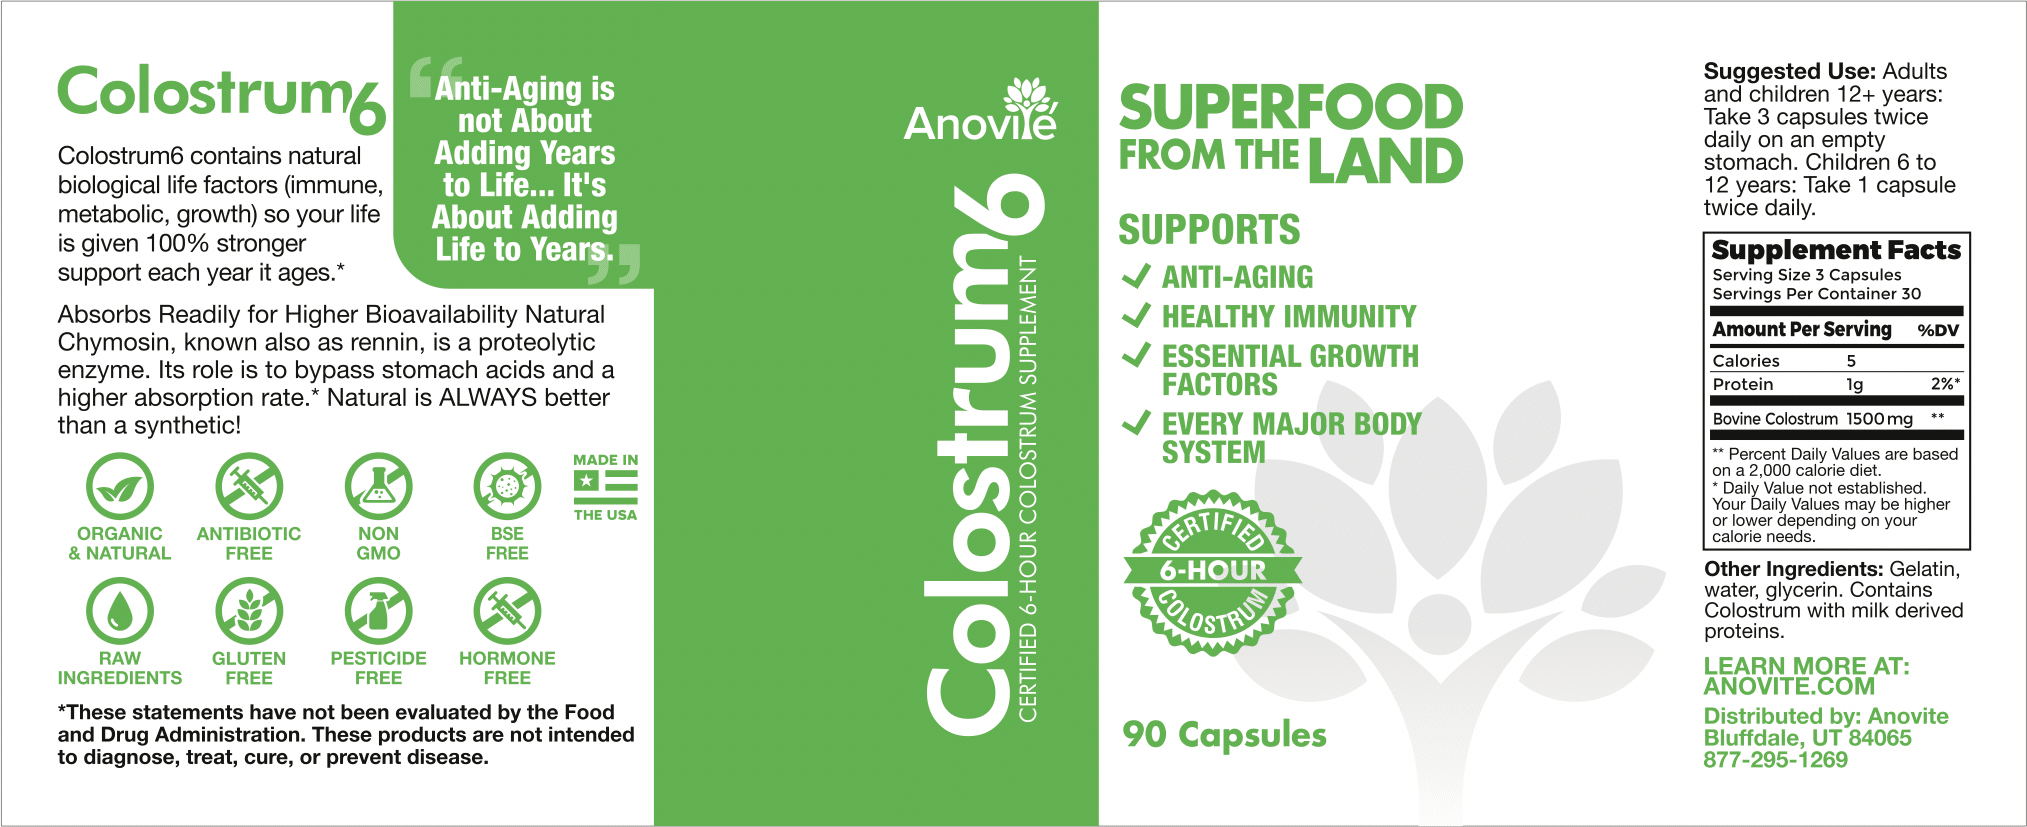 Anovite-Colostrum6-90Cap